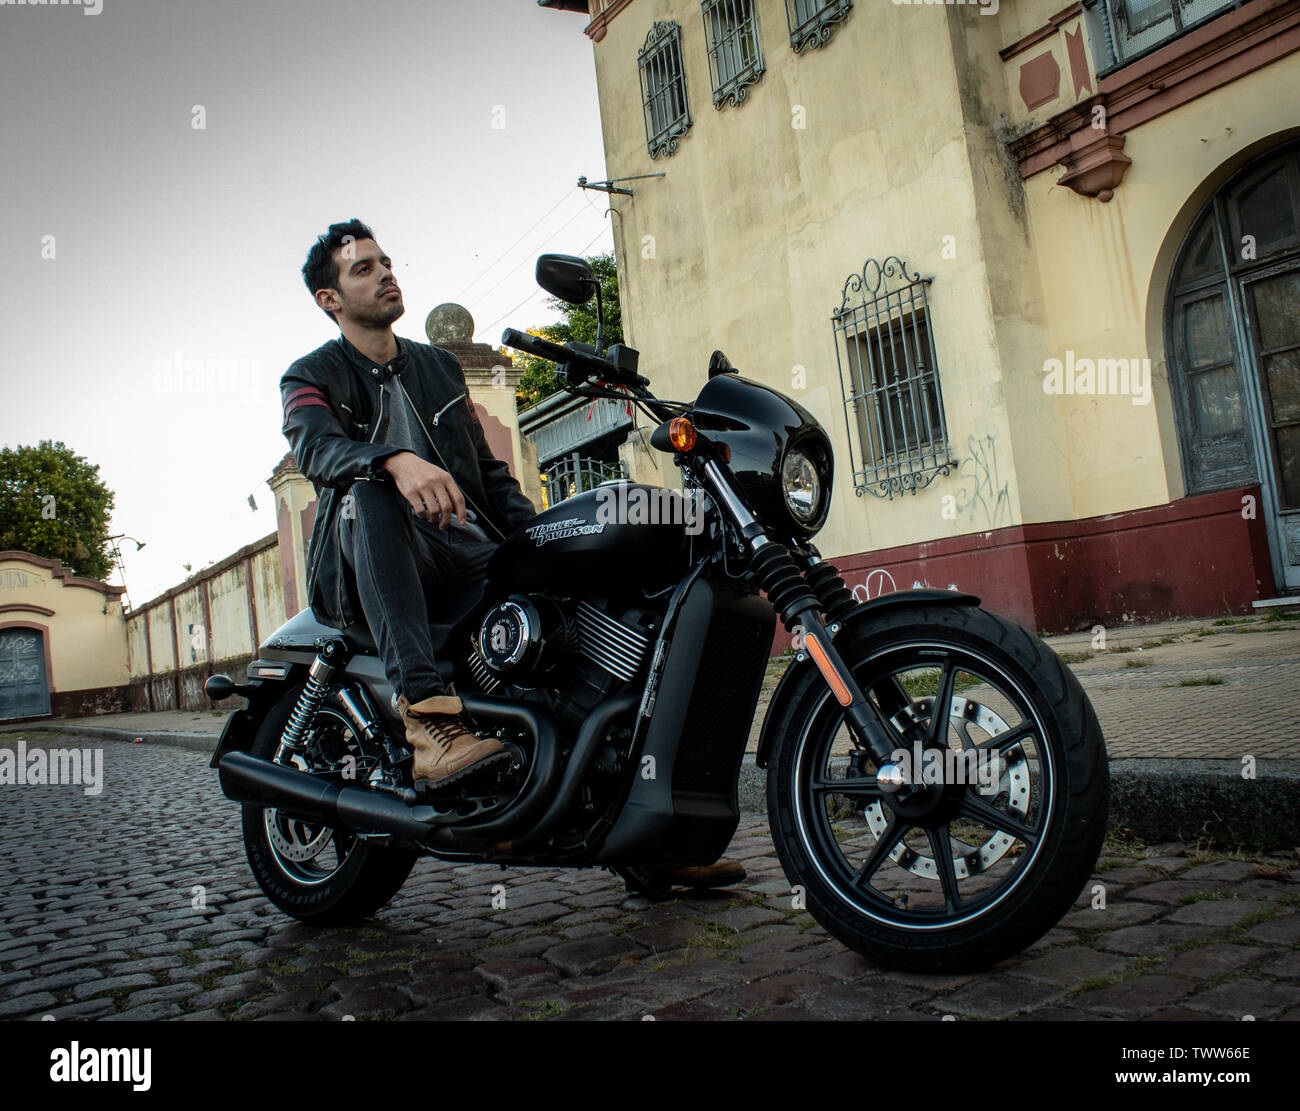 Boys in Harley Davidson motocicleta Stock Photo